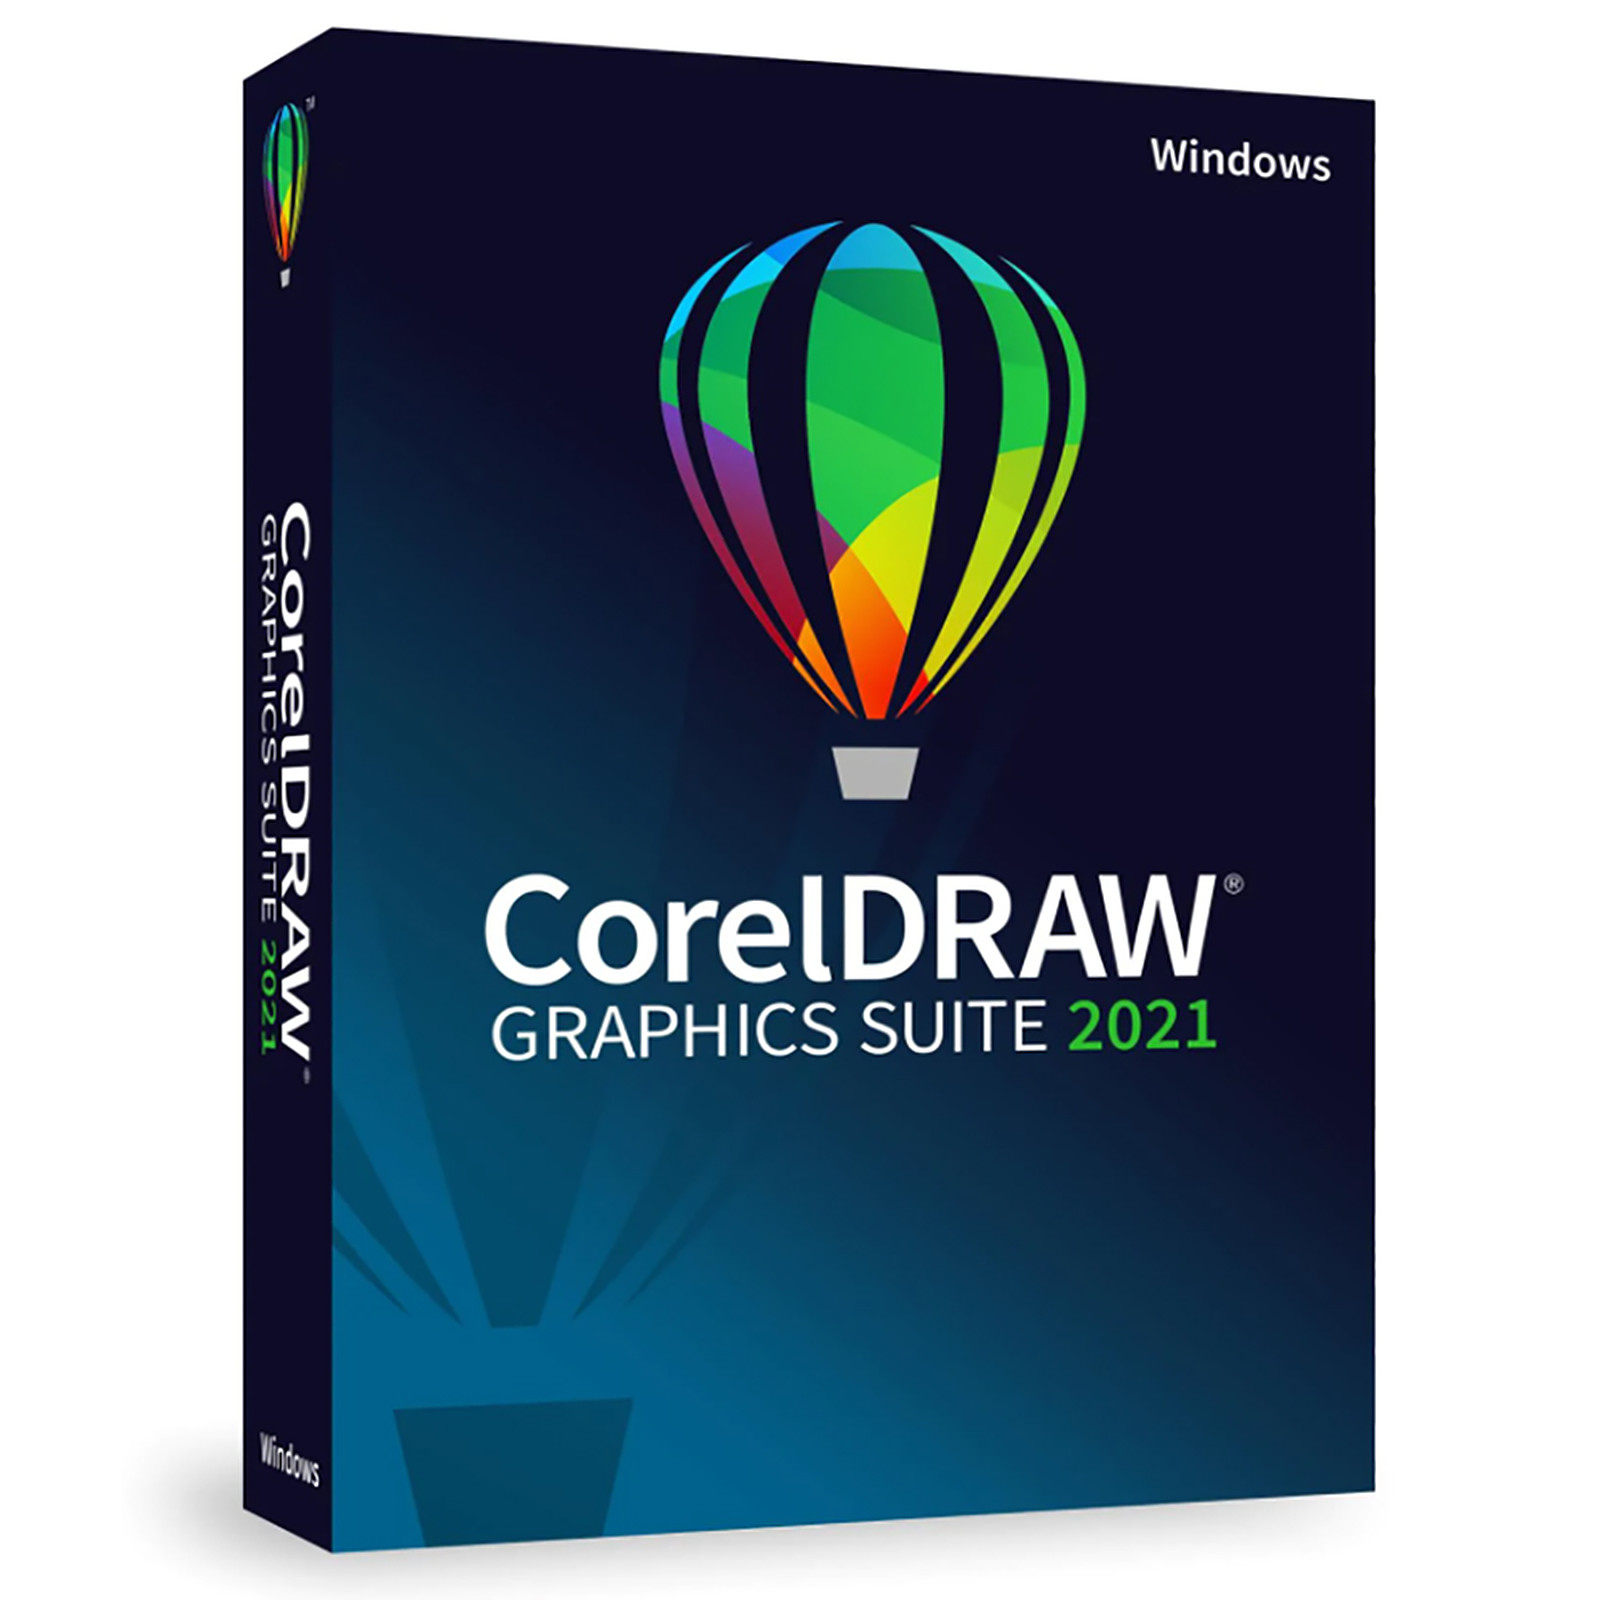 CorelDRAW Graphics Suite 2021 Crack + License Key Full